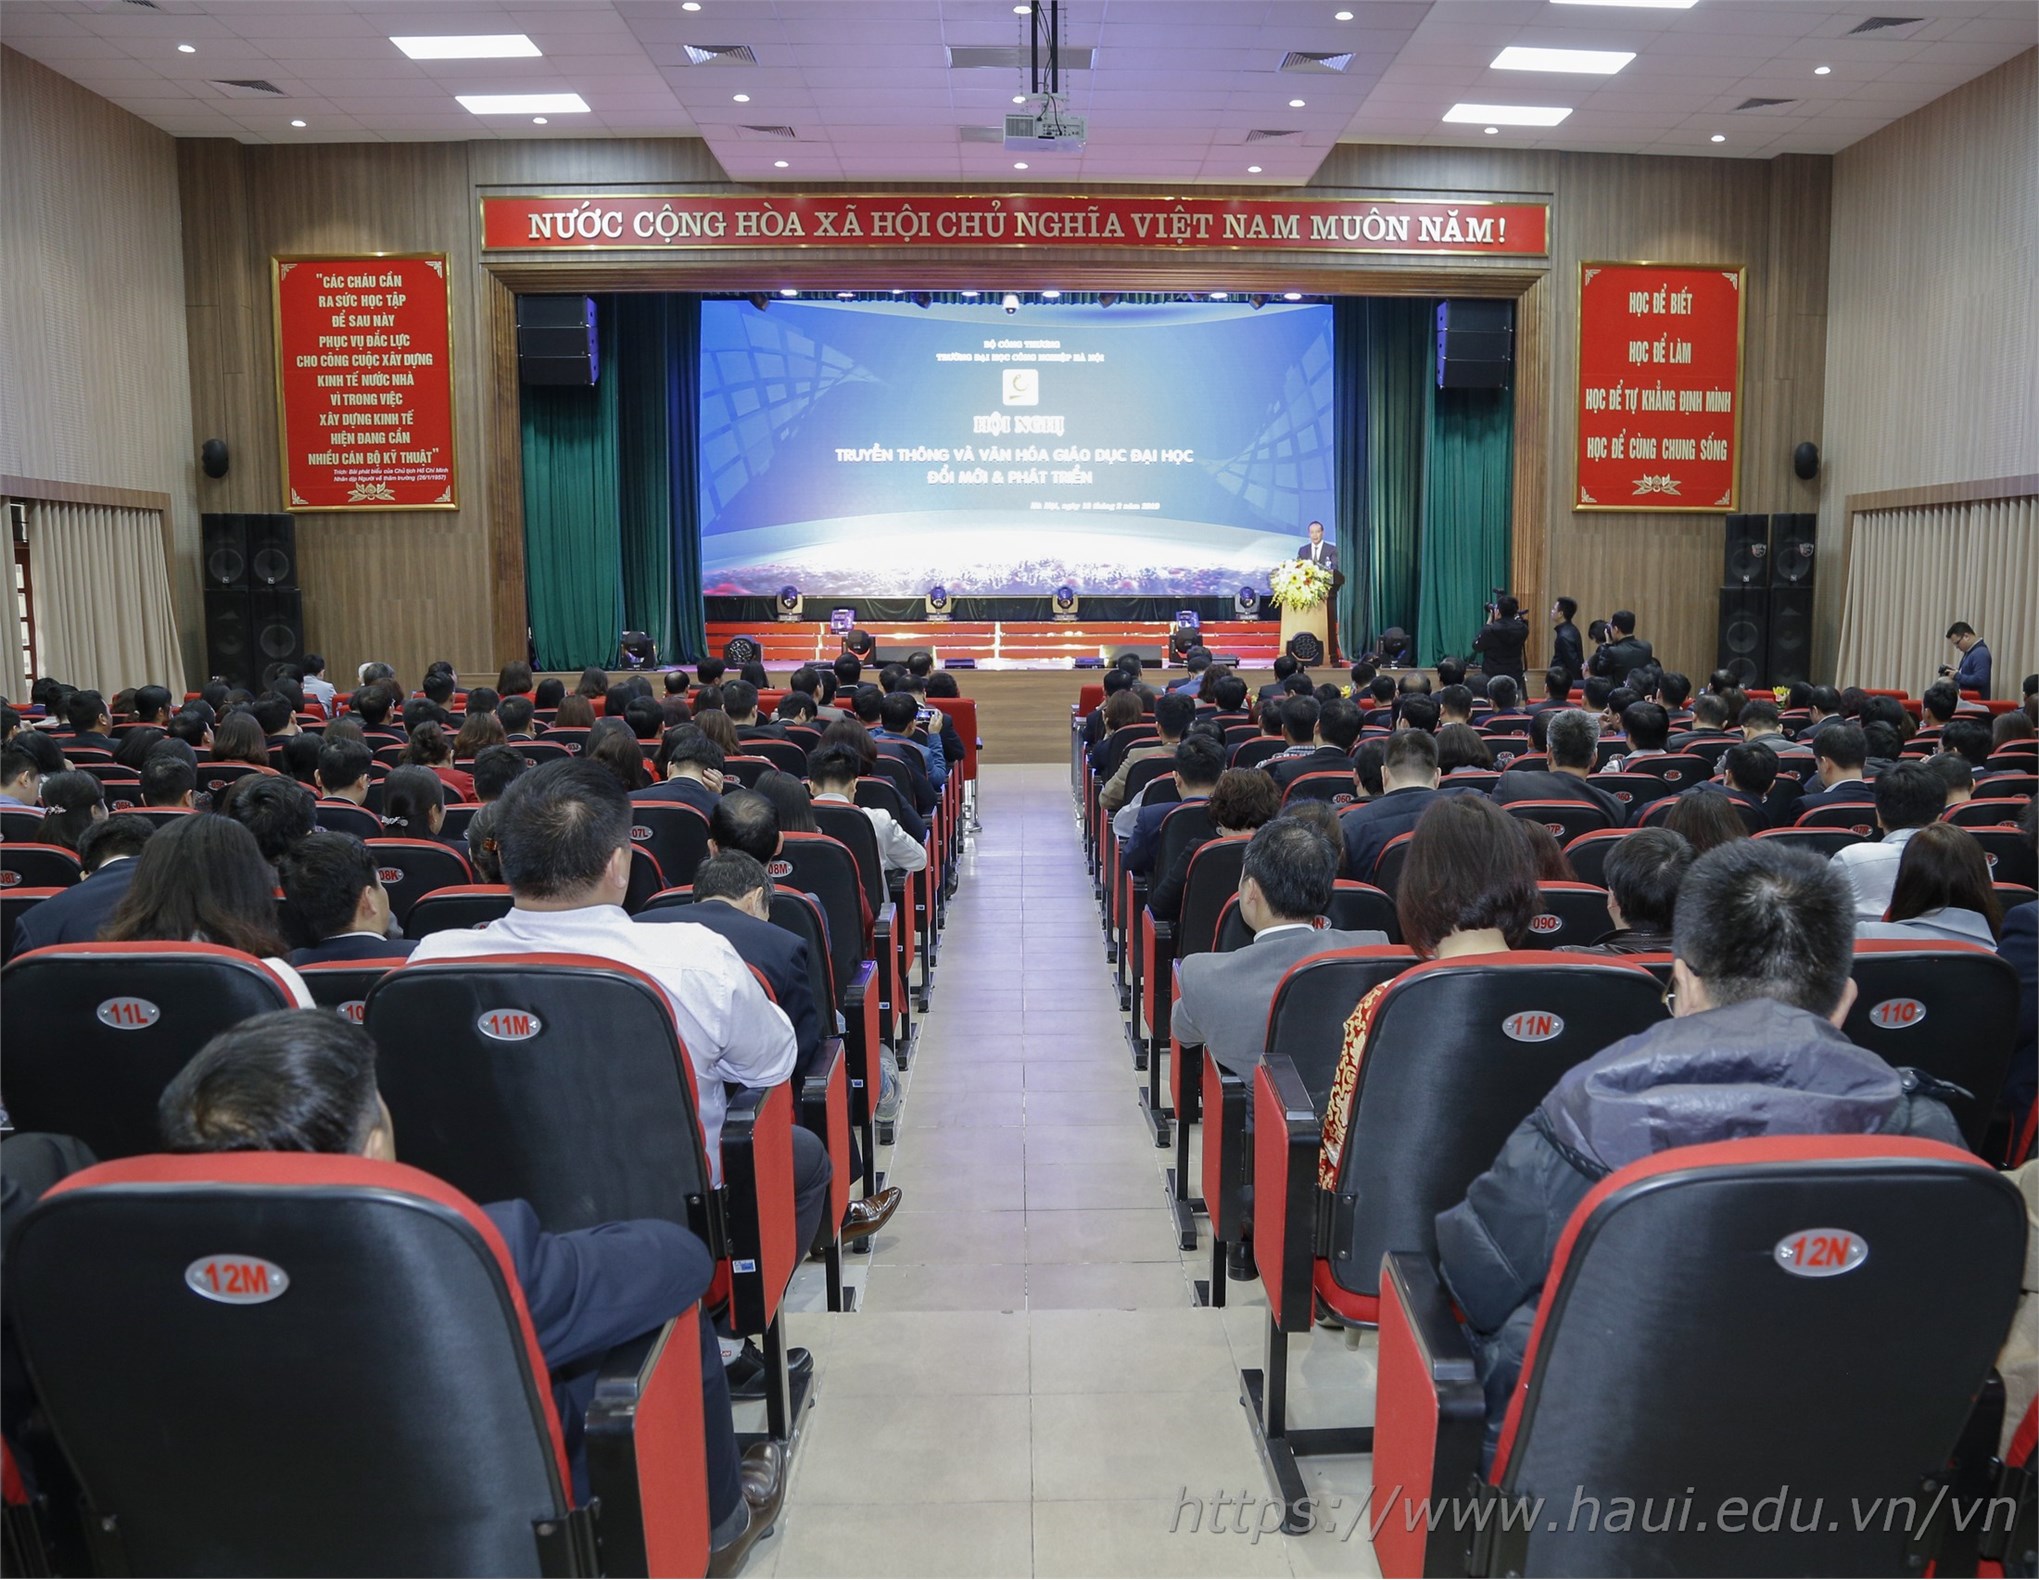 Hội nghị Truyền thông và Văn hóa giáo dục đại học - Đổi mới & Phát triển